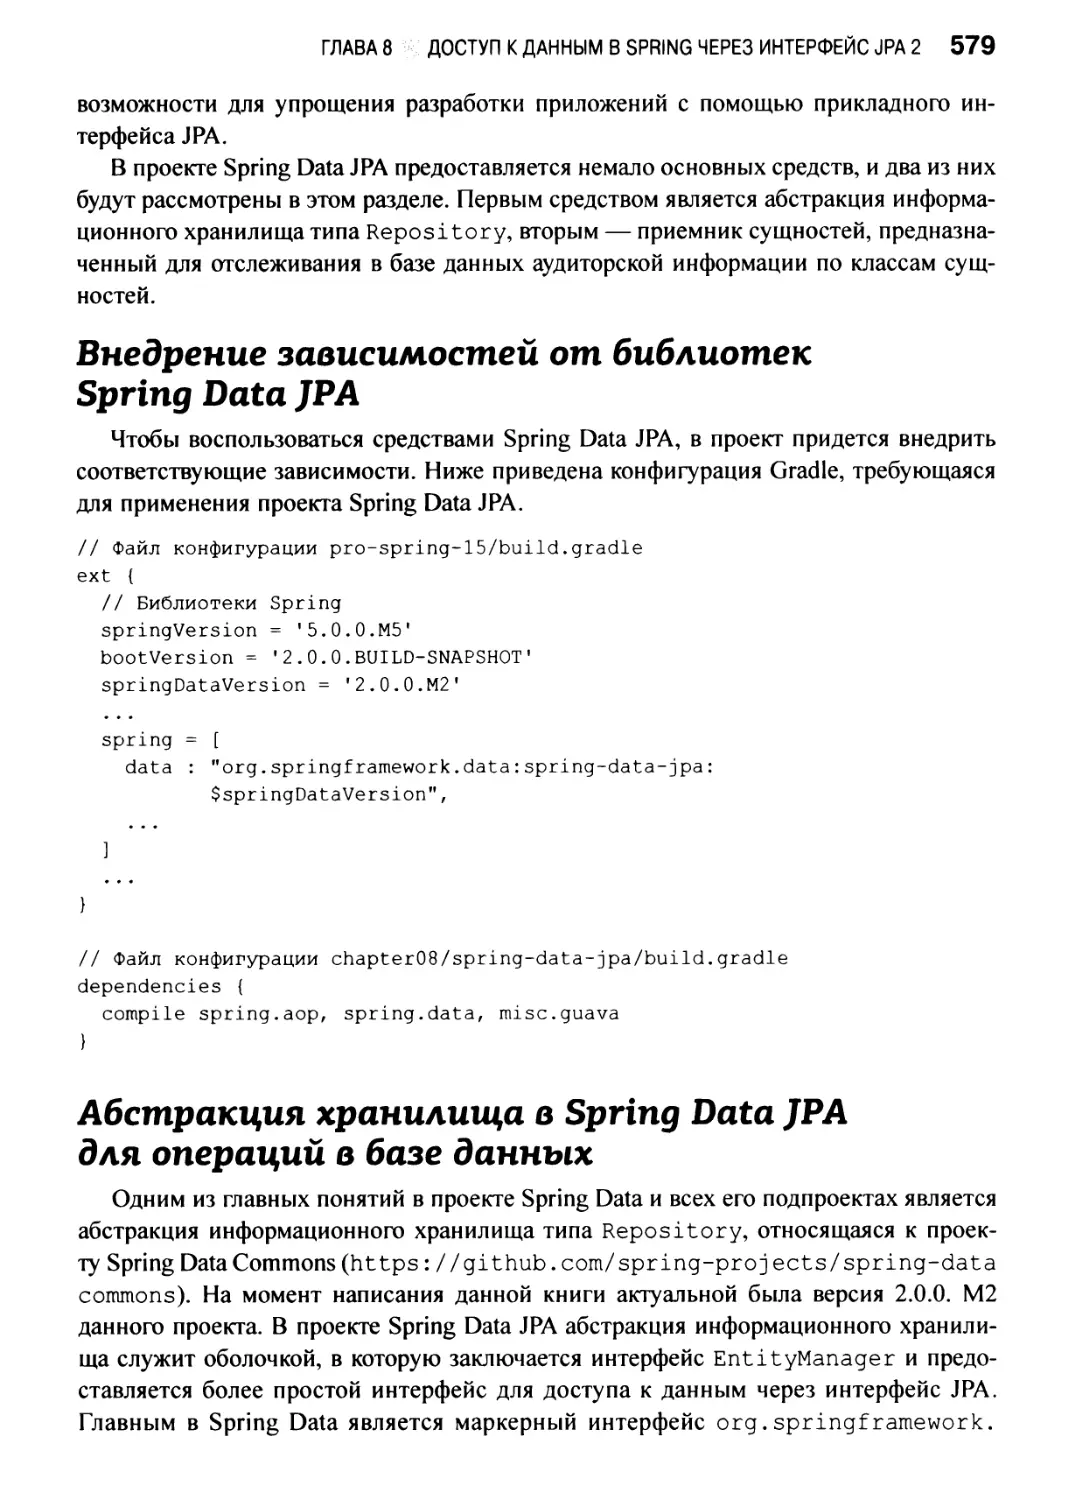 Абстракция хранилища в Spring Data JPA для операций в базе данных